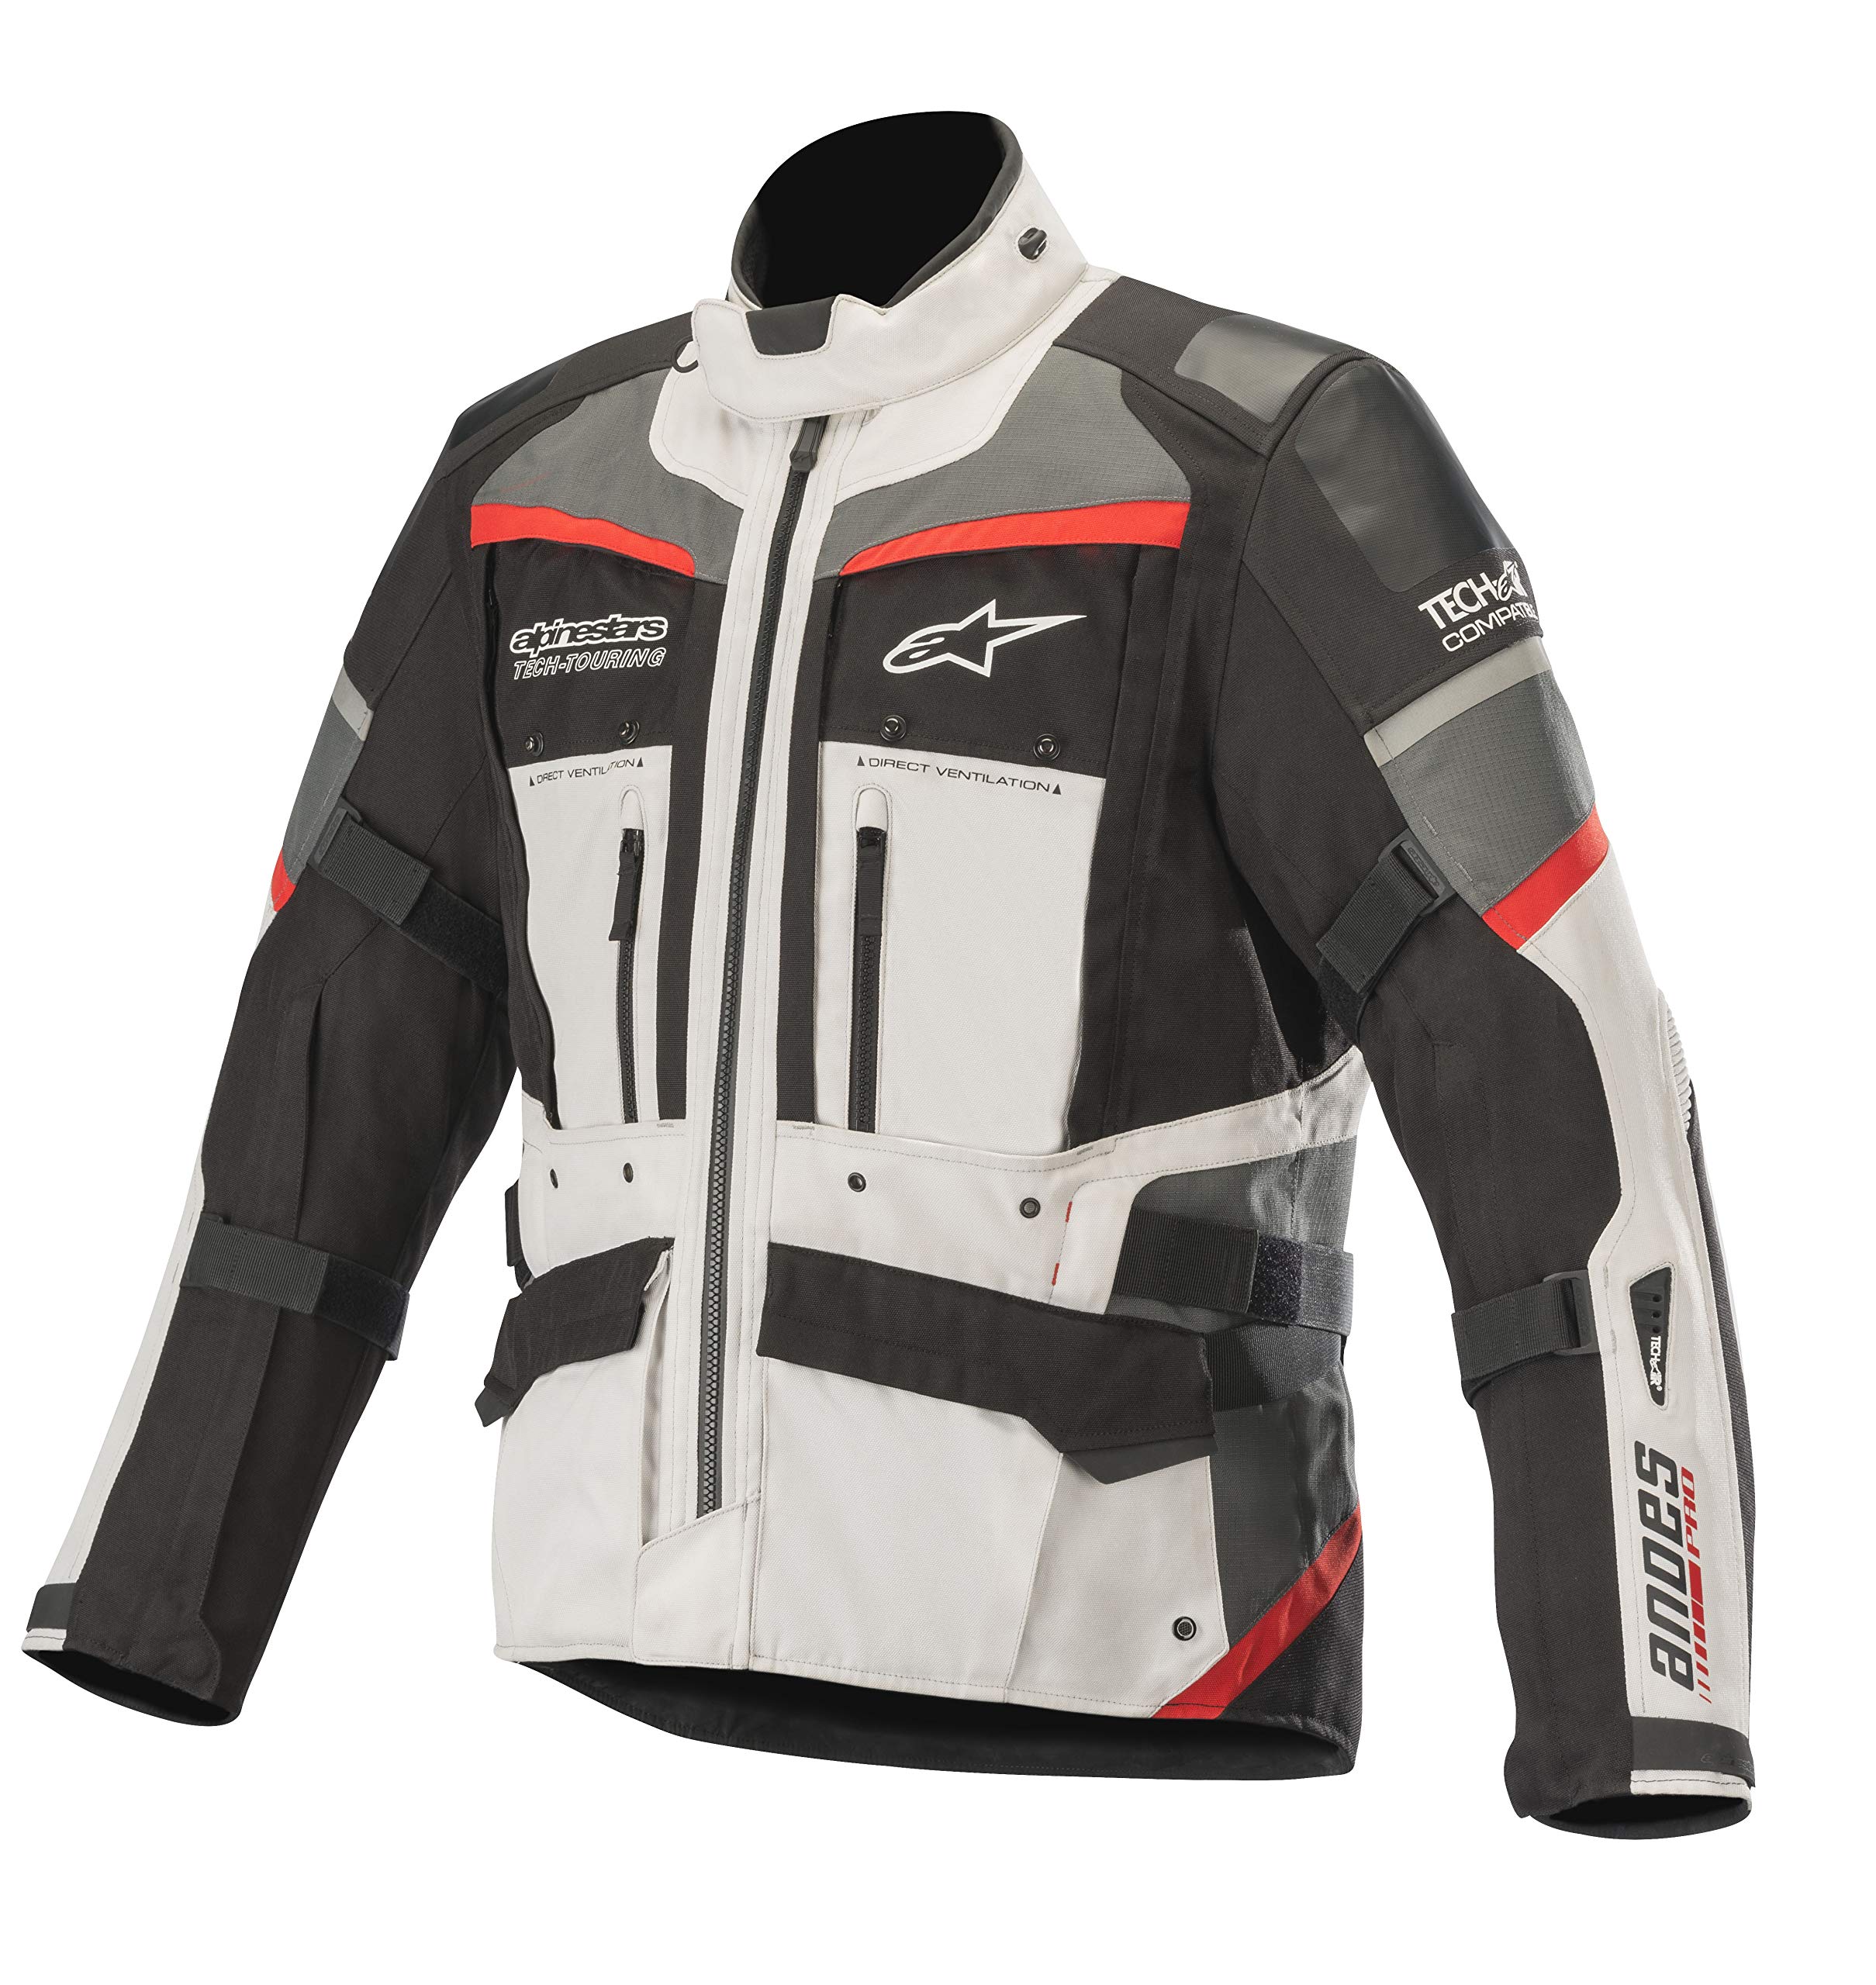 Alpinestars Motorradjacken Andes Pro Drystar Jacket Tech-air Compatible Light Gray Black Dark Gray Red, Grau/Schwarz/Rot, 4XL